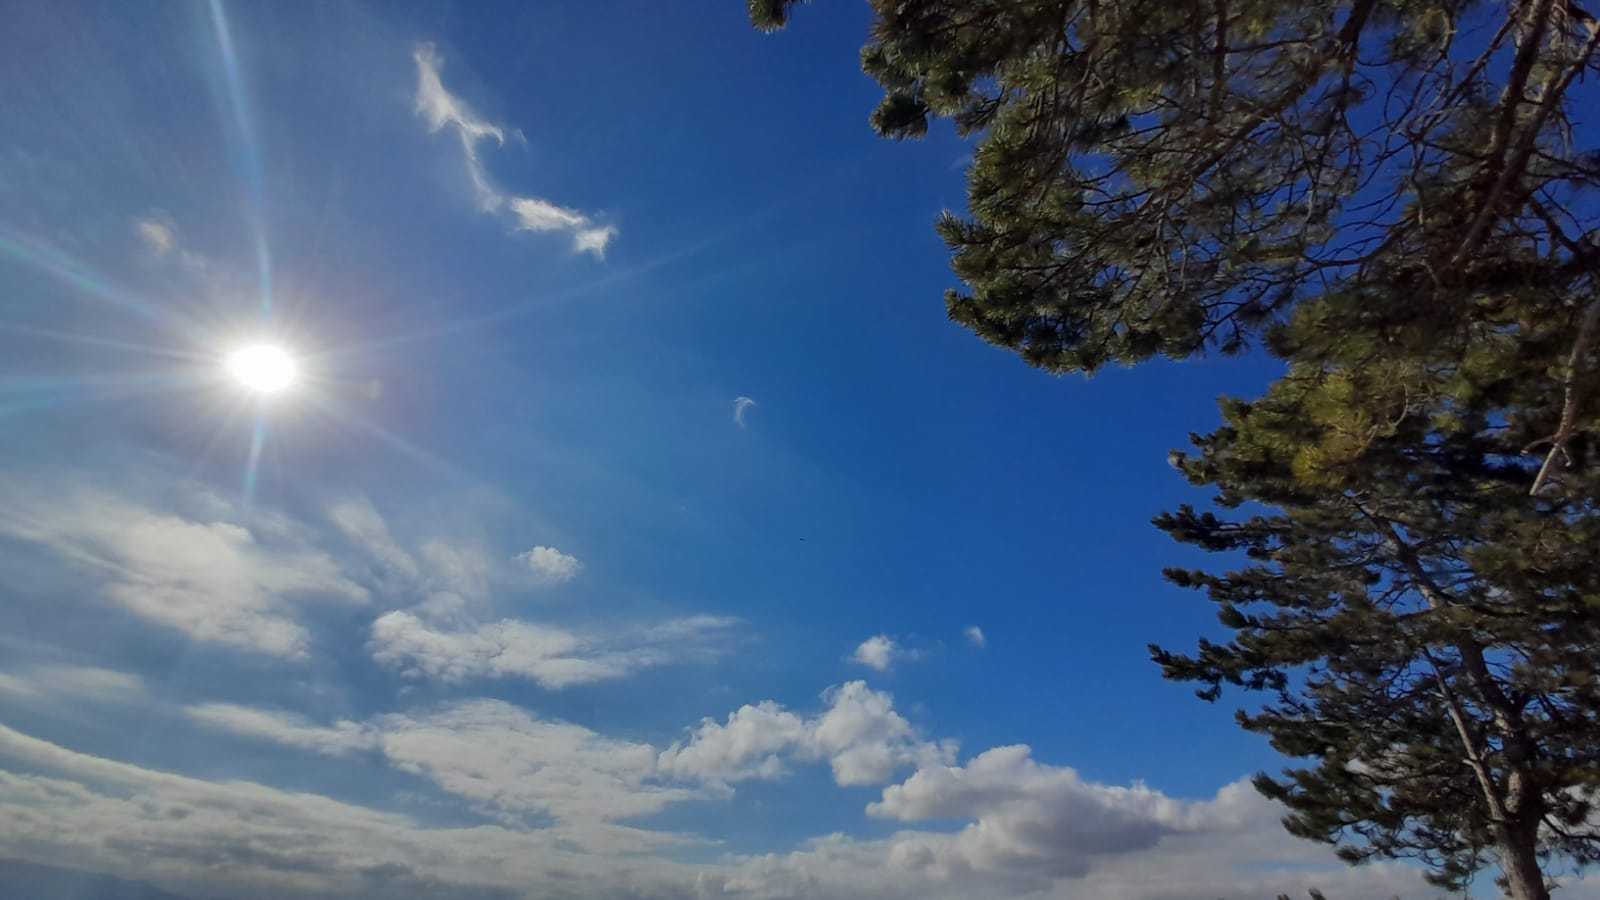 Meteo Ragusa: oggi sabato 17 Febbraio poco nuvoloso per velature, previsto freddo intenso.